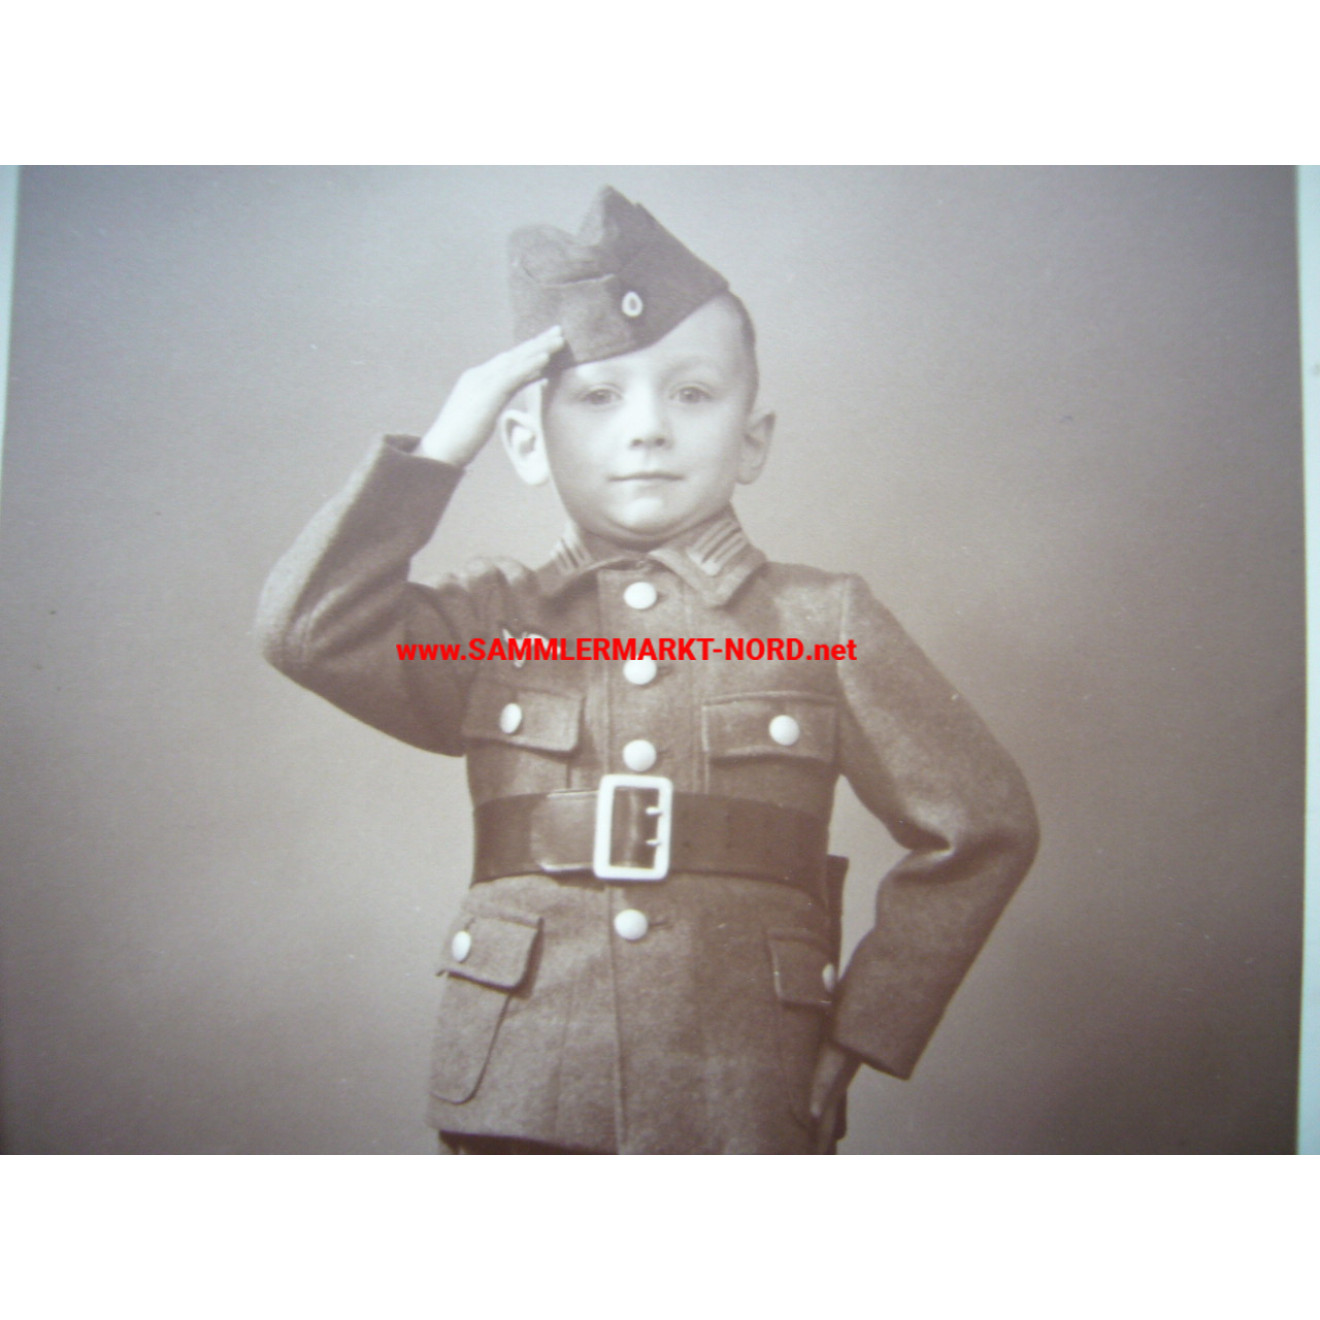 2 x Portrait - Little boy in Wehrmacht children's uniform, Sammlermarkt ...